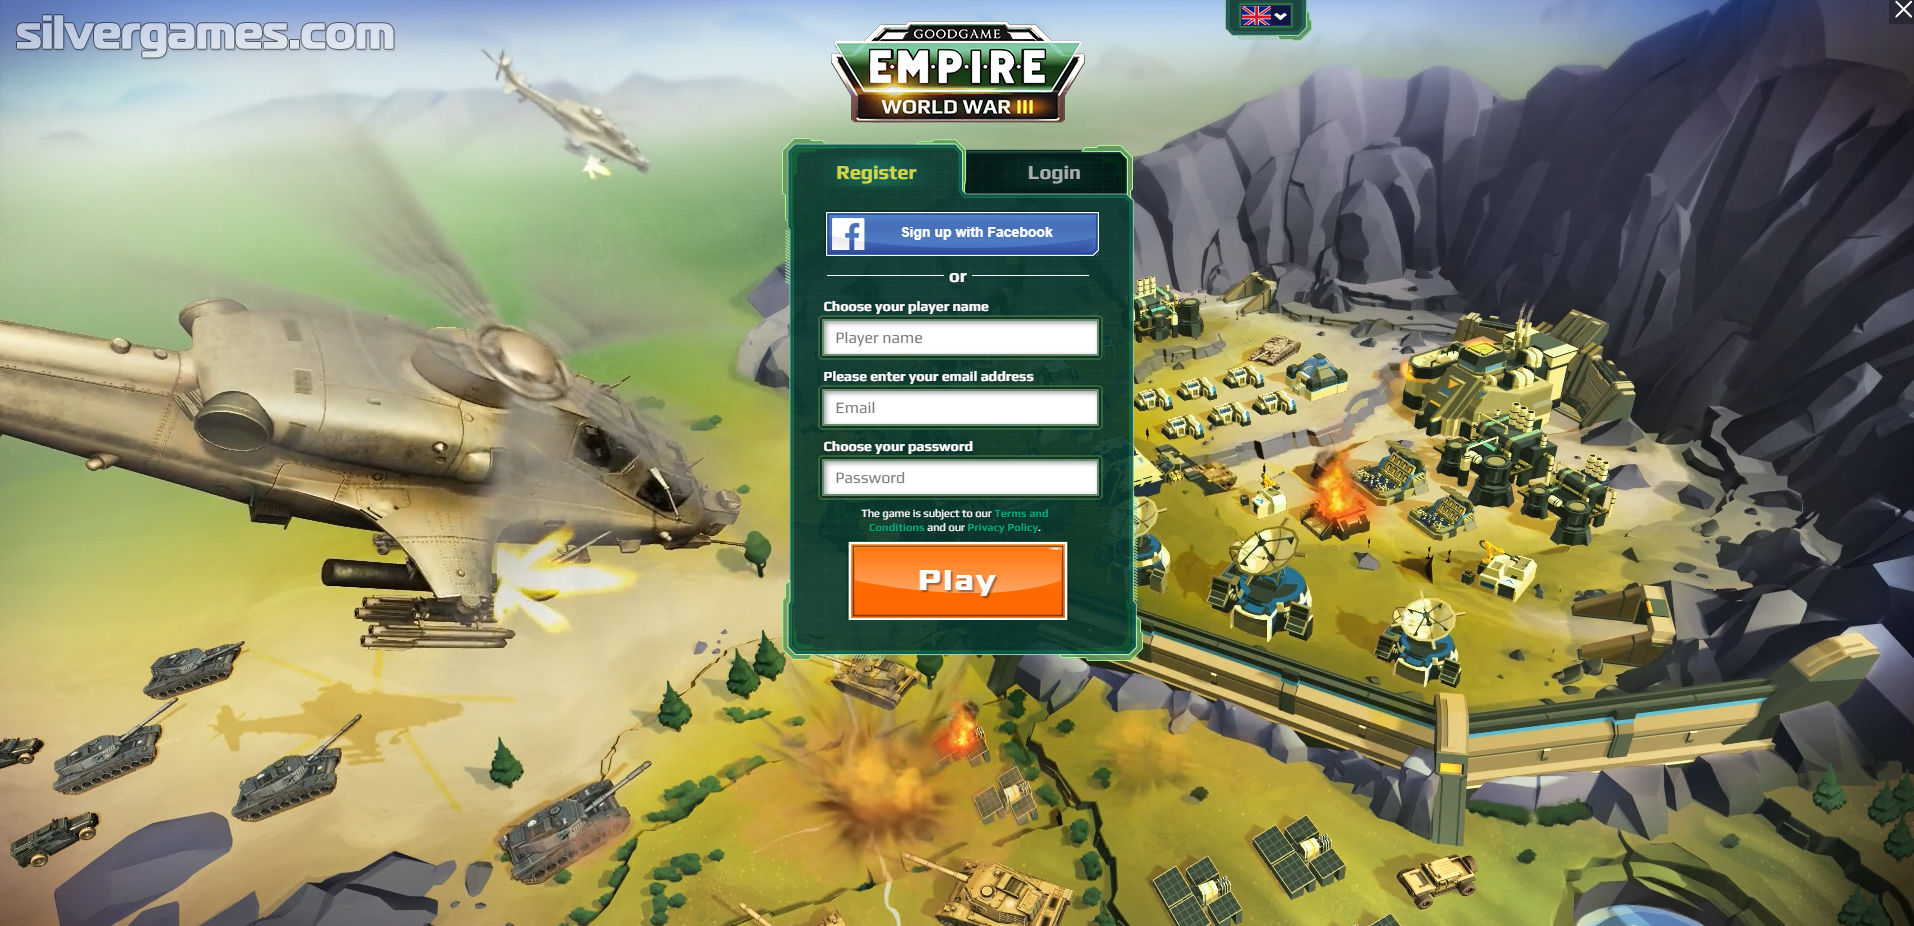 https://a.silvergames.com/screenshots/goodgame-empire-world-war-3/1_menu.jpg